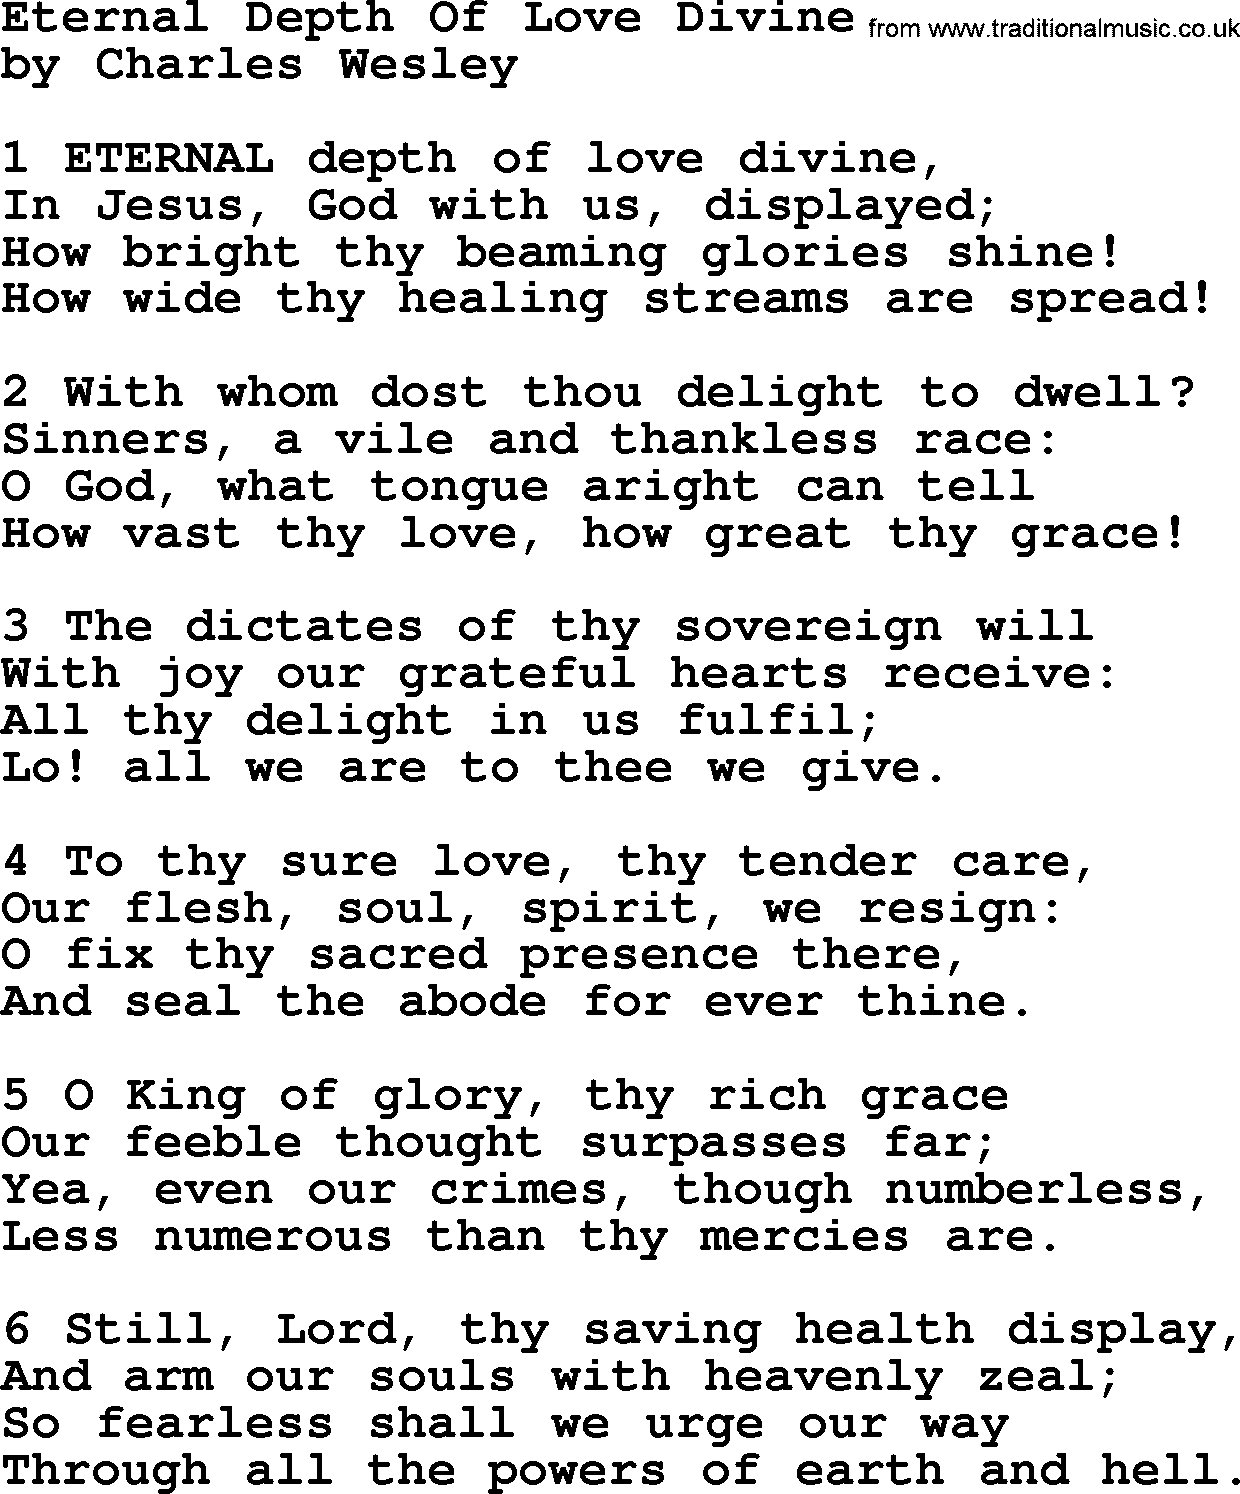 Charles Wesley hymn: Eternal Depth Of Love Divine, lyrics